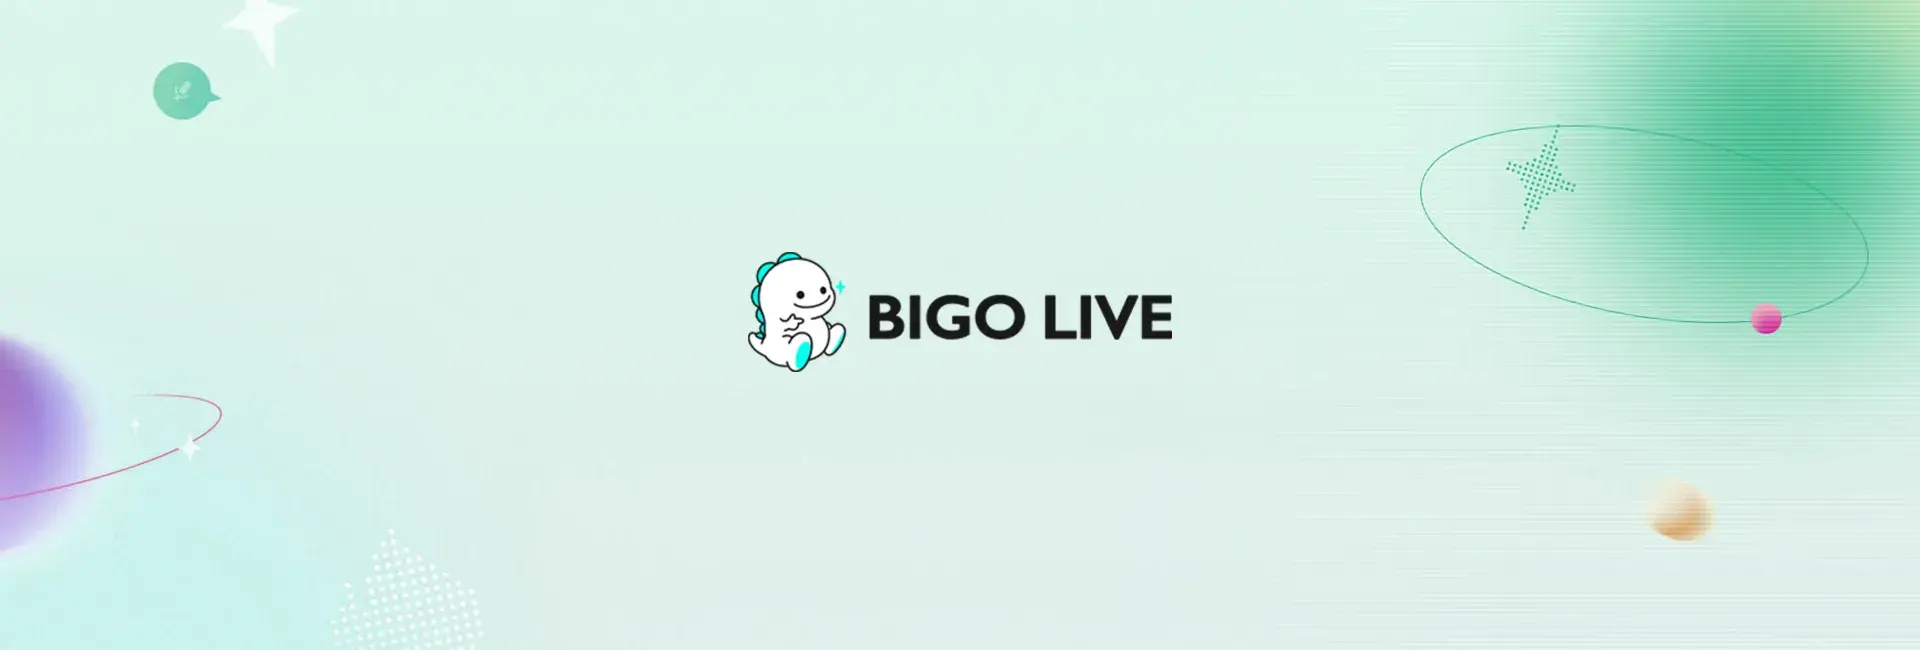 Bigo Live - 25 Diamonds (Global)	